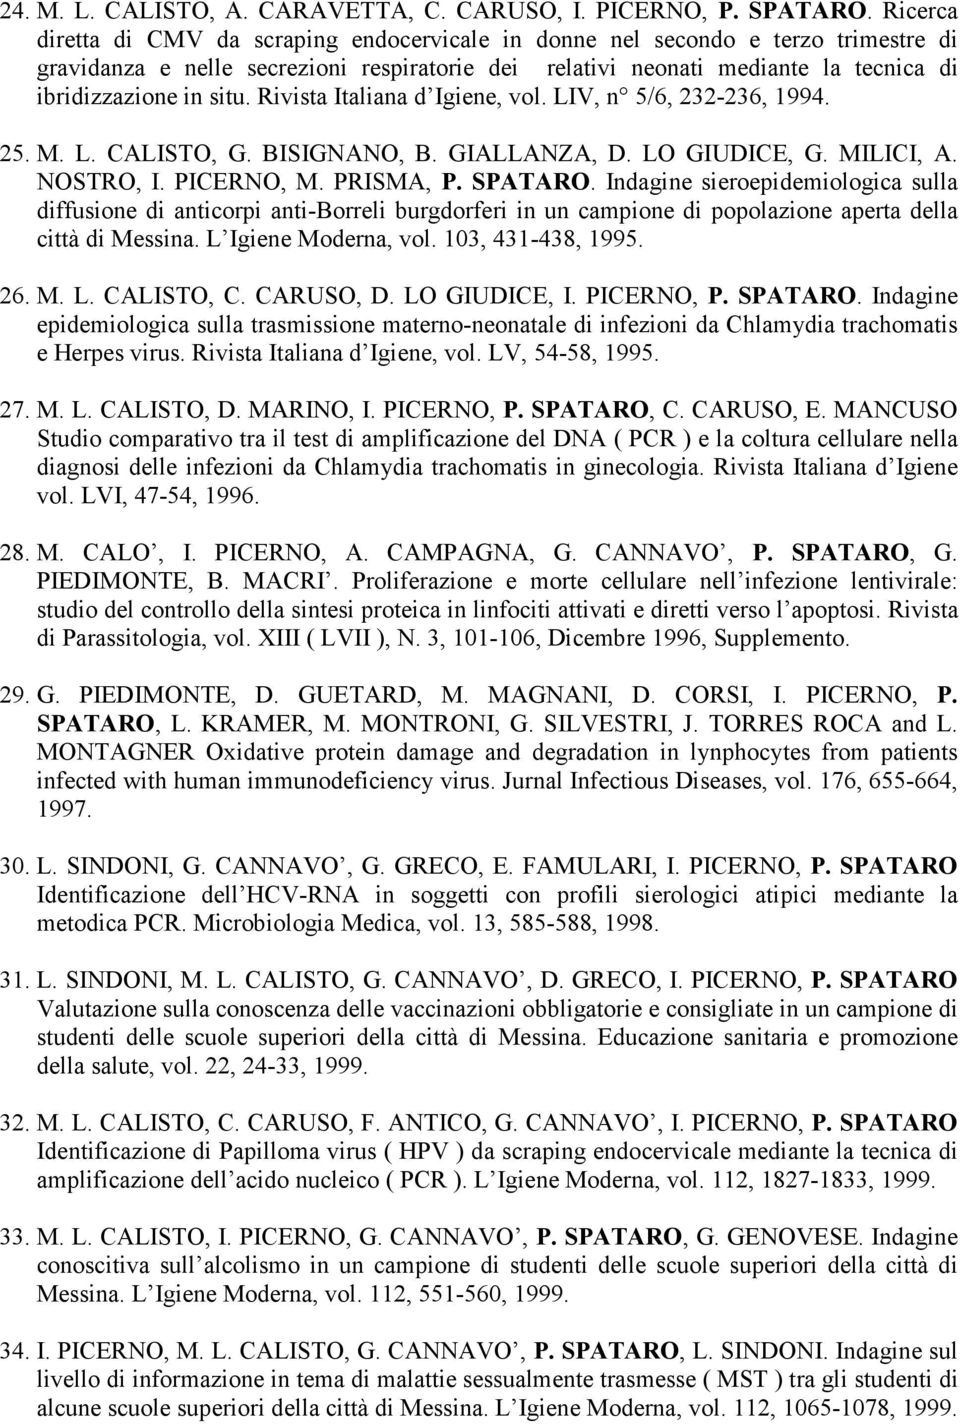 situ. Rivista Italiana d Igiene, vol. LIV, n 5/6, 232-236, 1994. 25. M. L. CALISTO, G. BISIGNANO, B. GIALLANZA, D. LO GIUDICE, G. MILICI, A. NOSTRO, I. PICERNO, M. PRISMA, P. SPATARO.